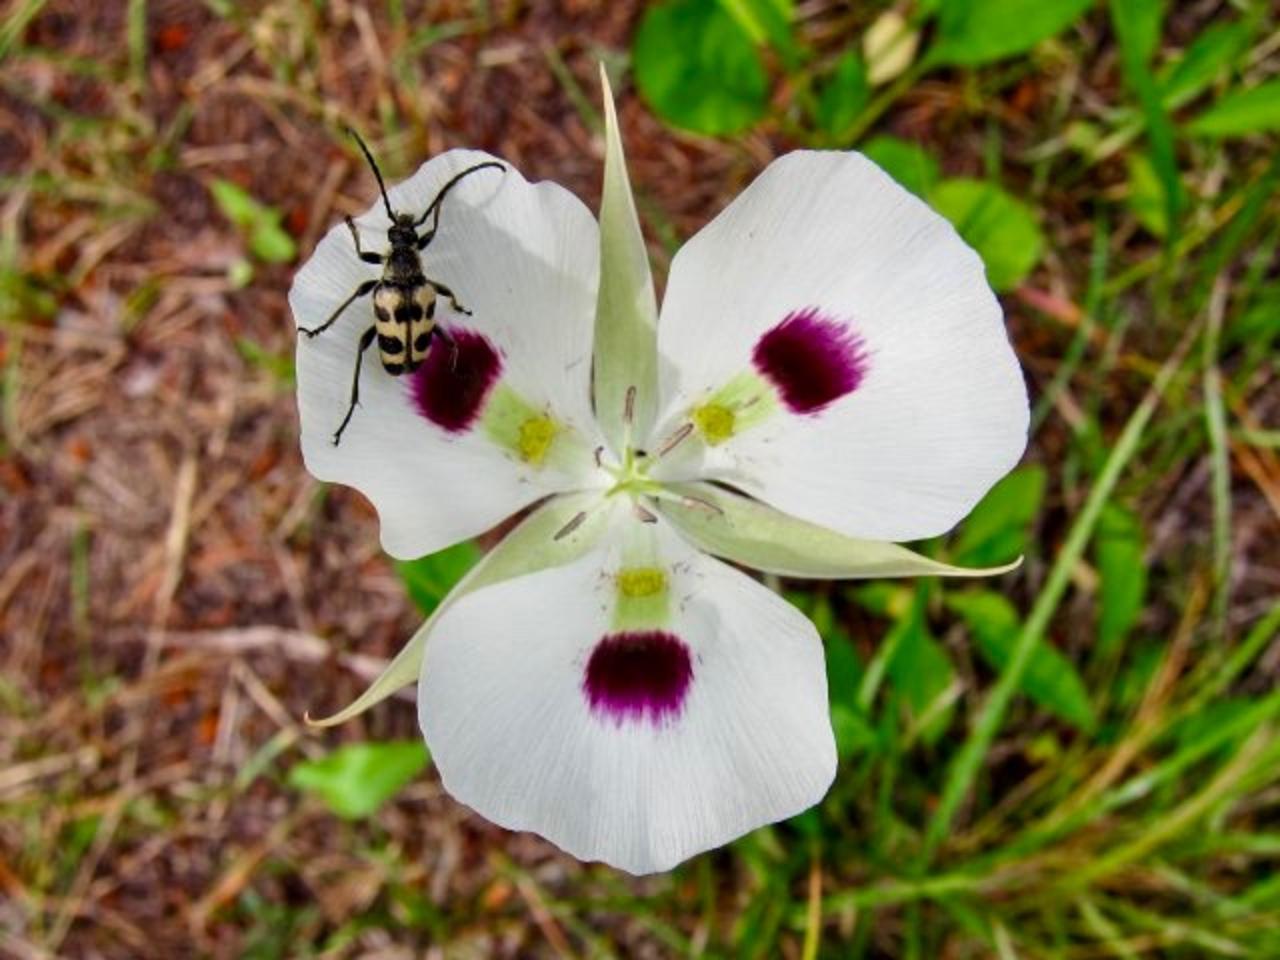 Calochortus eurycarpus, the native mariposa lily. Photo courtesy Miquel Veiera, Wikimedia Commons (BY 2.0)